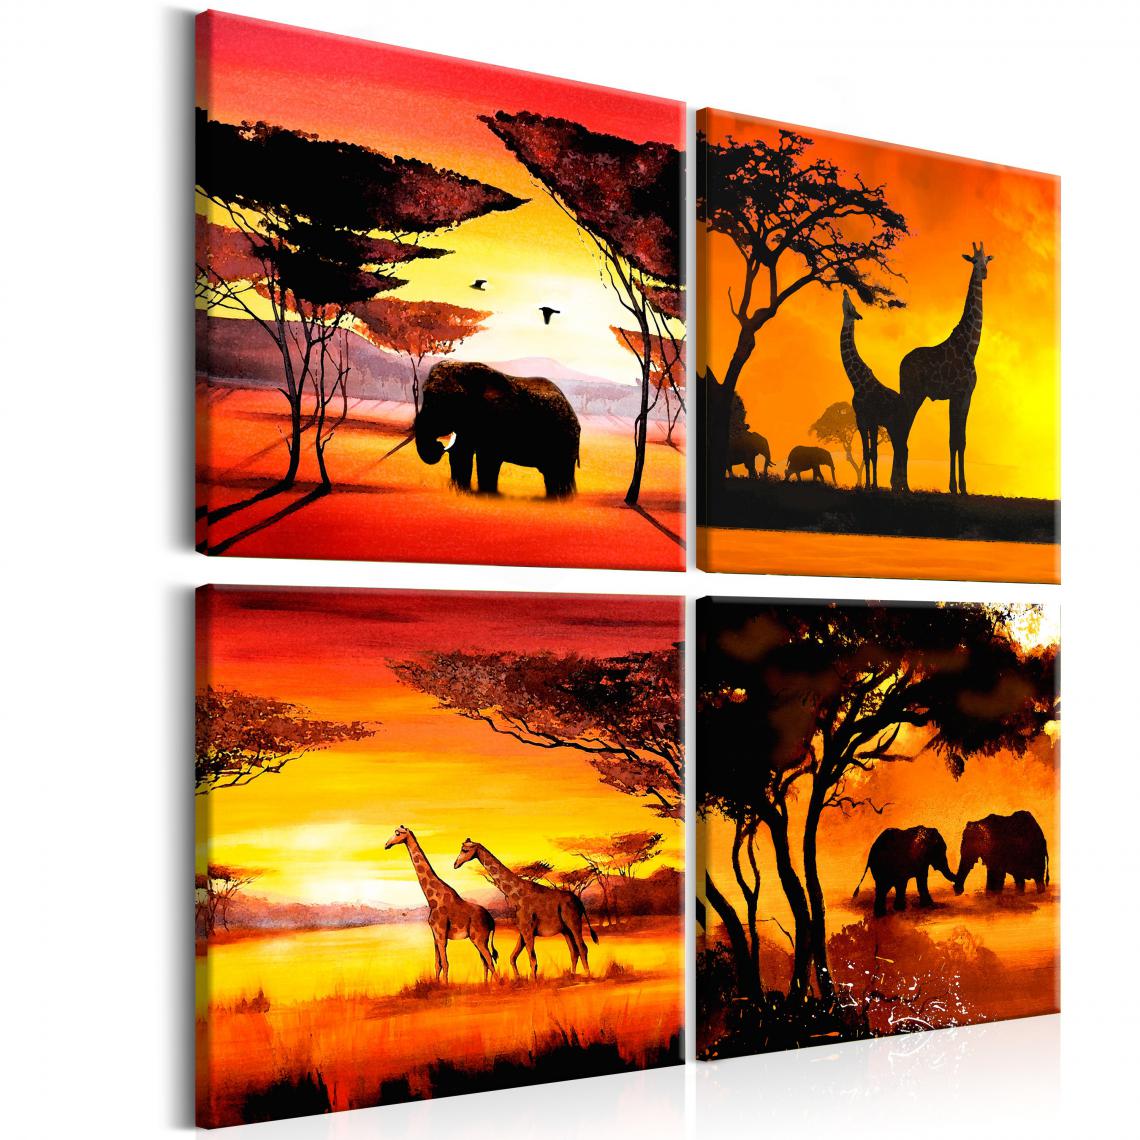 Decoshop26 - Tableau sur toile en 4 panneaux décoration murale image imprimée cadre en bois à suspendre Animaux Africains 60x60 cm 11_0003056 - Tableaux, peintures